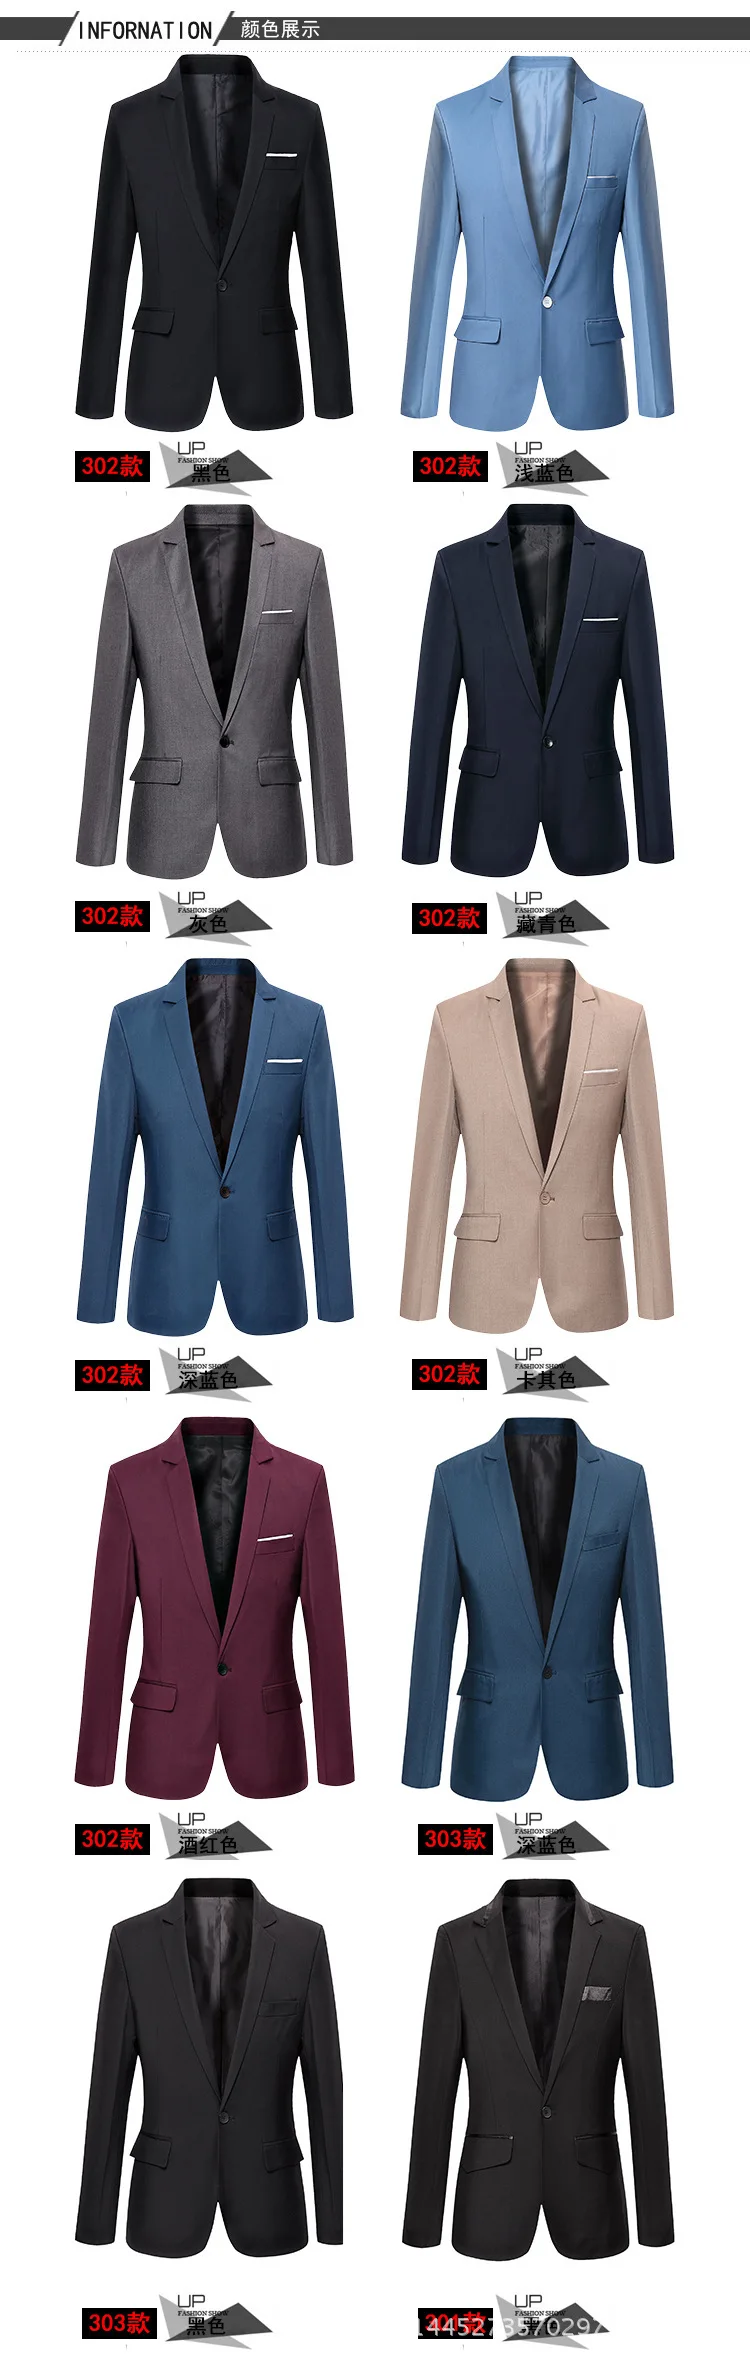 2021fashion Brand Men's Suit Jacket Men's Top Casual Suit Jacket Man ...